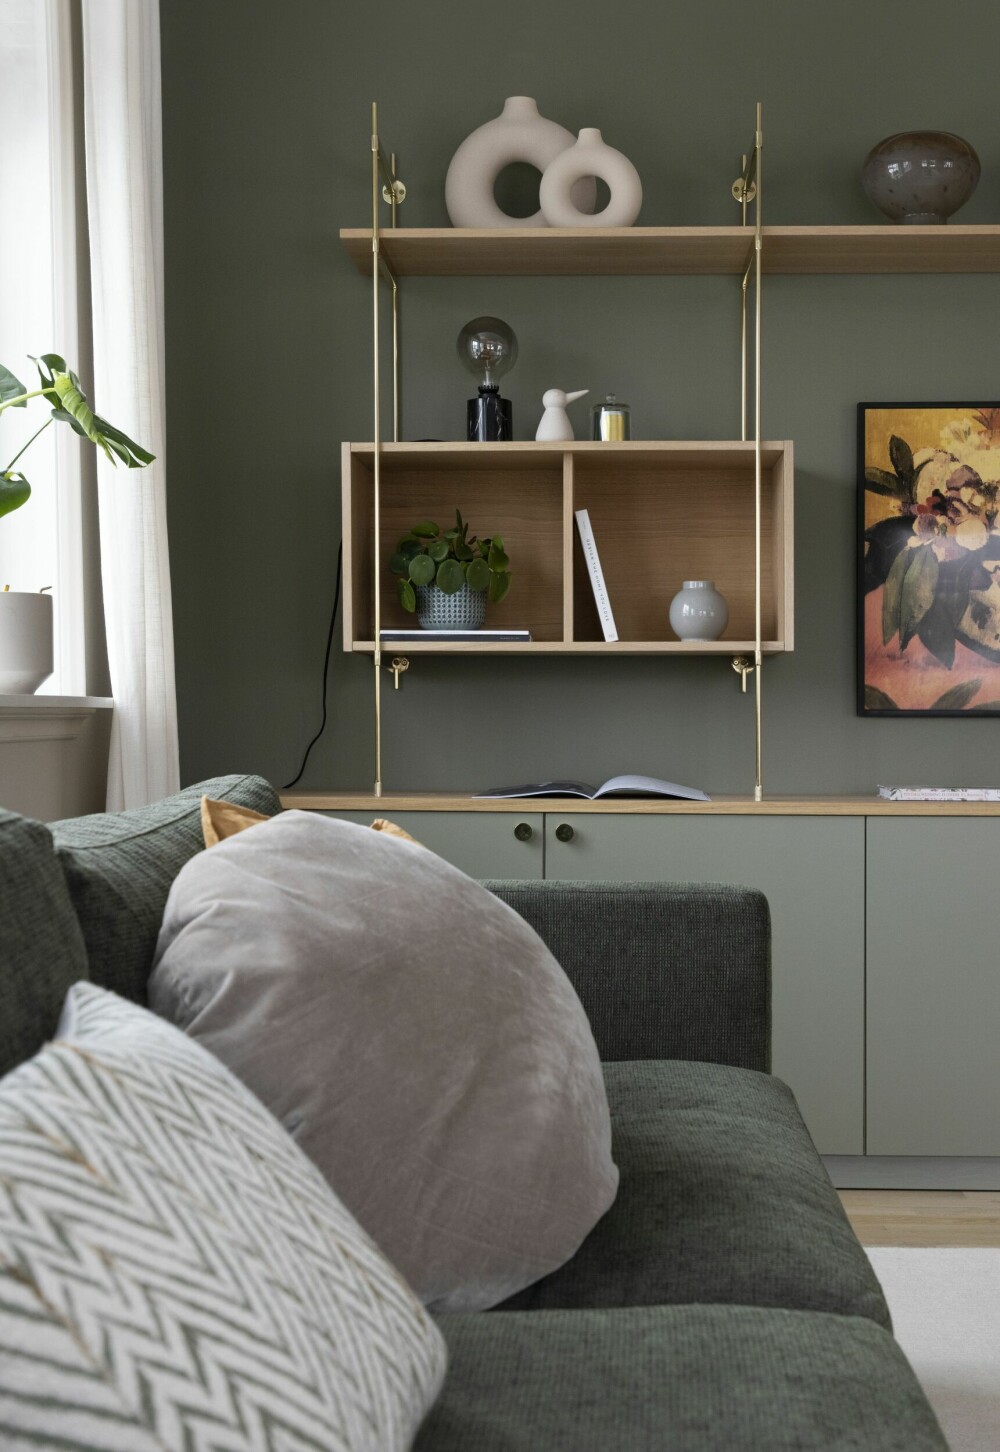 SOFA: Ved å plassere sofaen i vinkel fra veggen der tv-en henger, blir det mindre fokus på skjermen når den ikke er skrudd på.